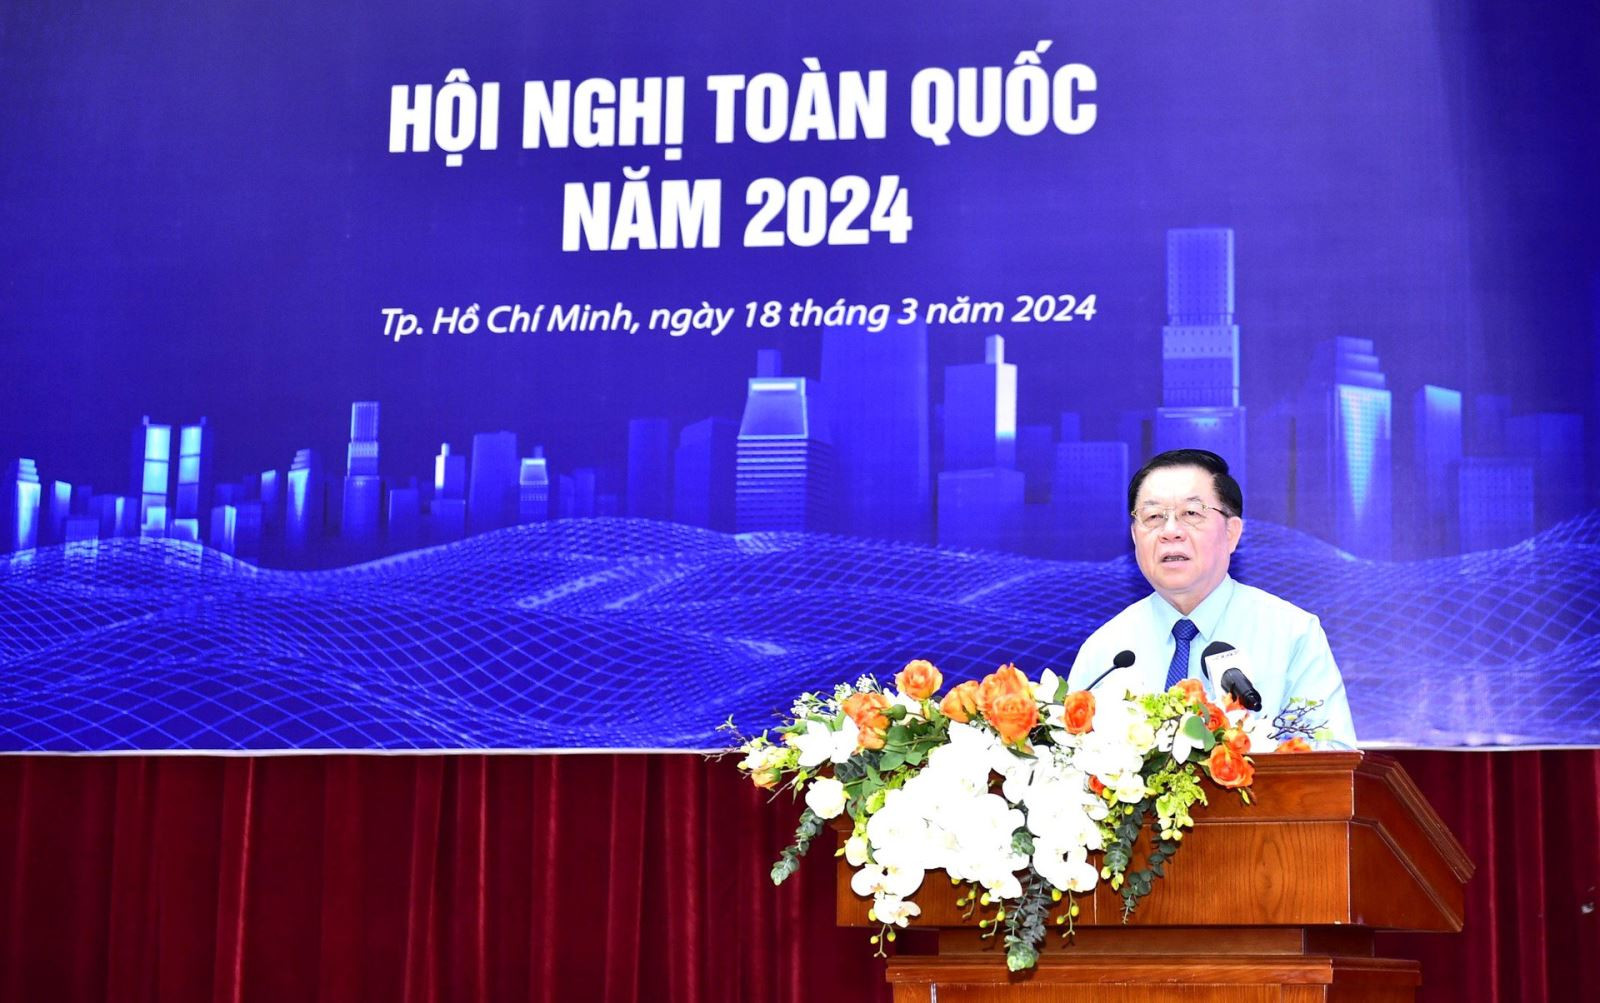 Đồng chí Nguyễn Trọng Nghĩa - Bí thư Trung ương Đảng, Trưởng Ban Tuyên giáo Trung ương phát biểu chỉ đạo hội nghị